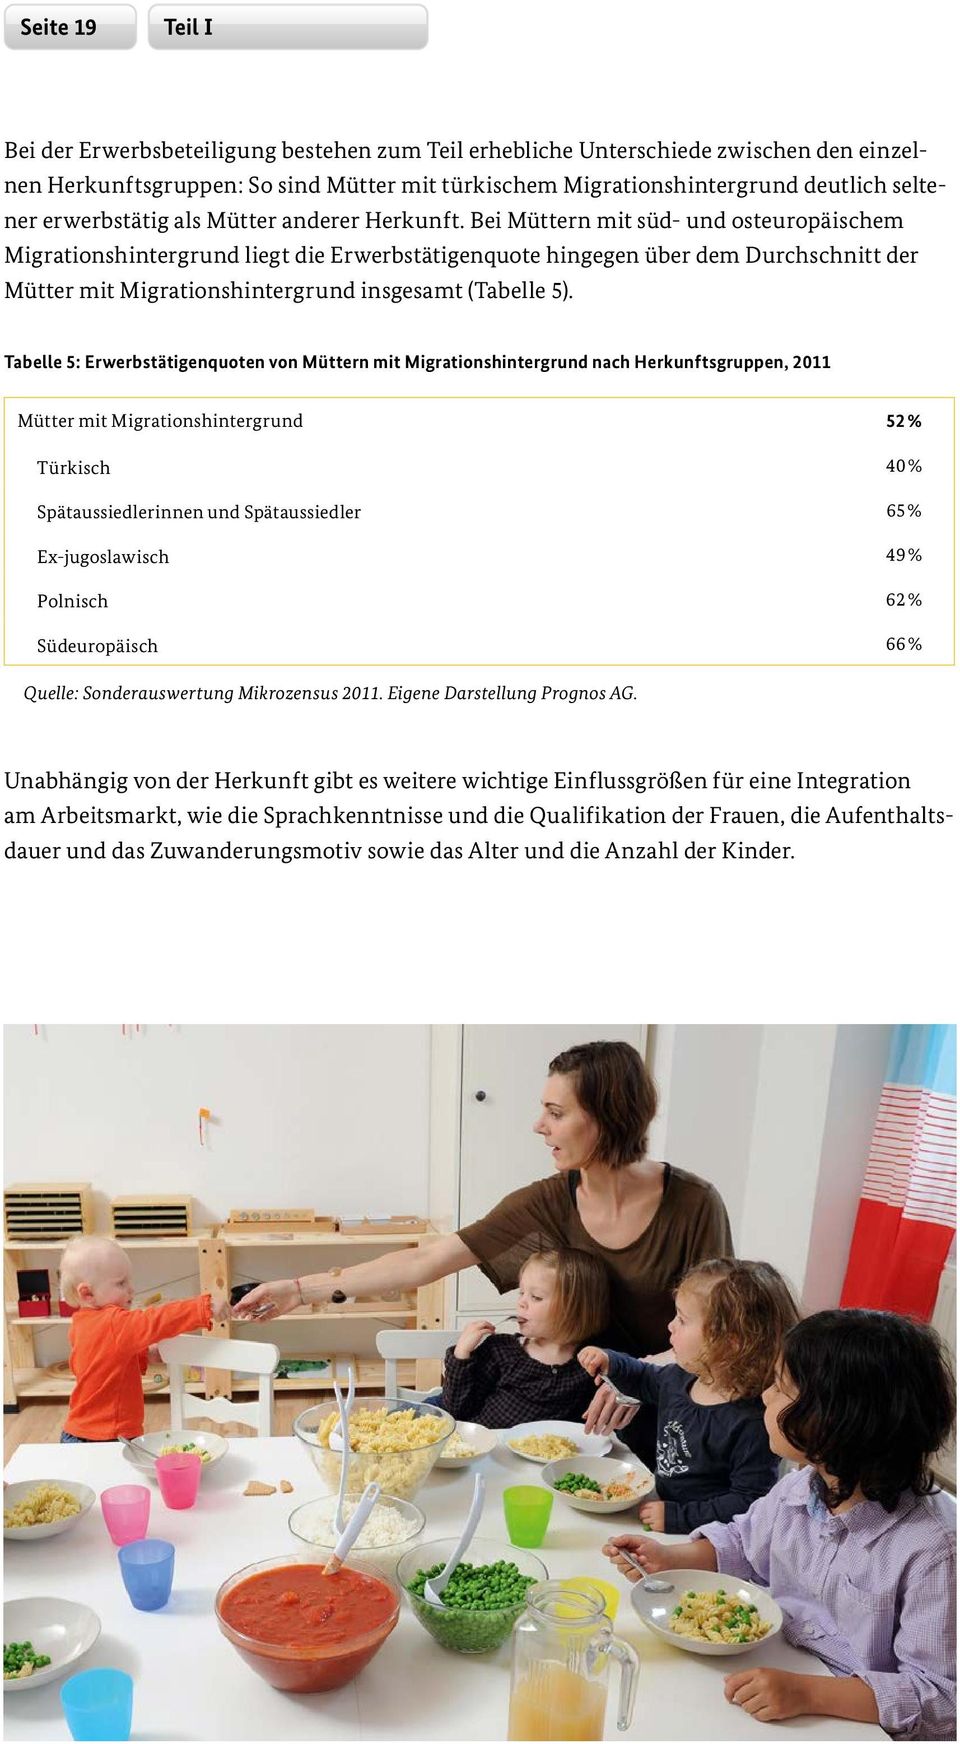 Bei Müttern mit süd- und osteuropäischem Migrationshintergrund liegt die Erwerbstätigenquote hingegen über dem Durchschnitt der Mütter mit Migrationshintergrund insgesamt (Tabelle 5).